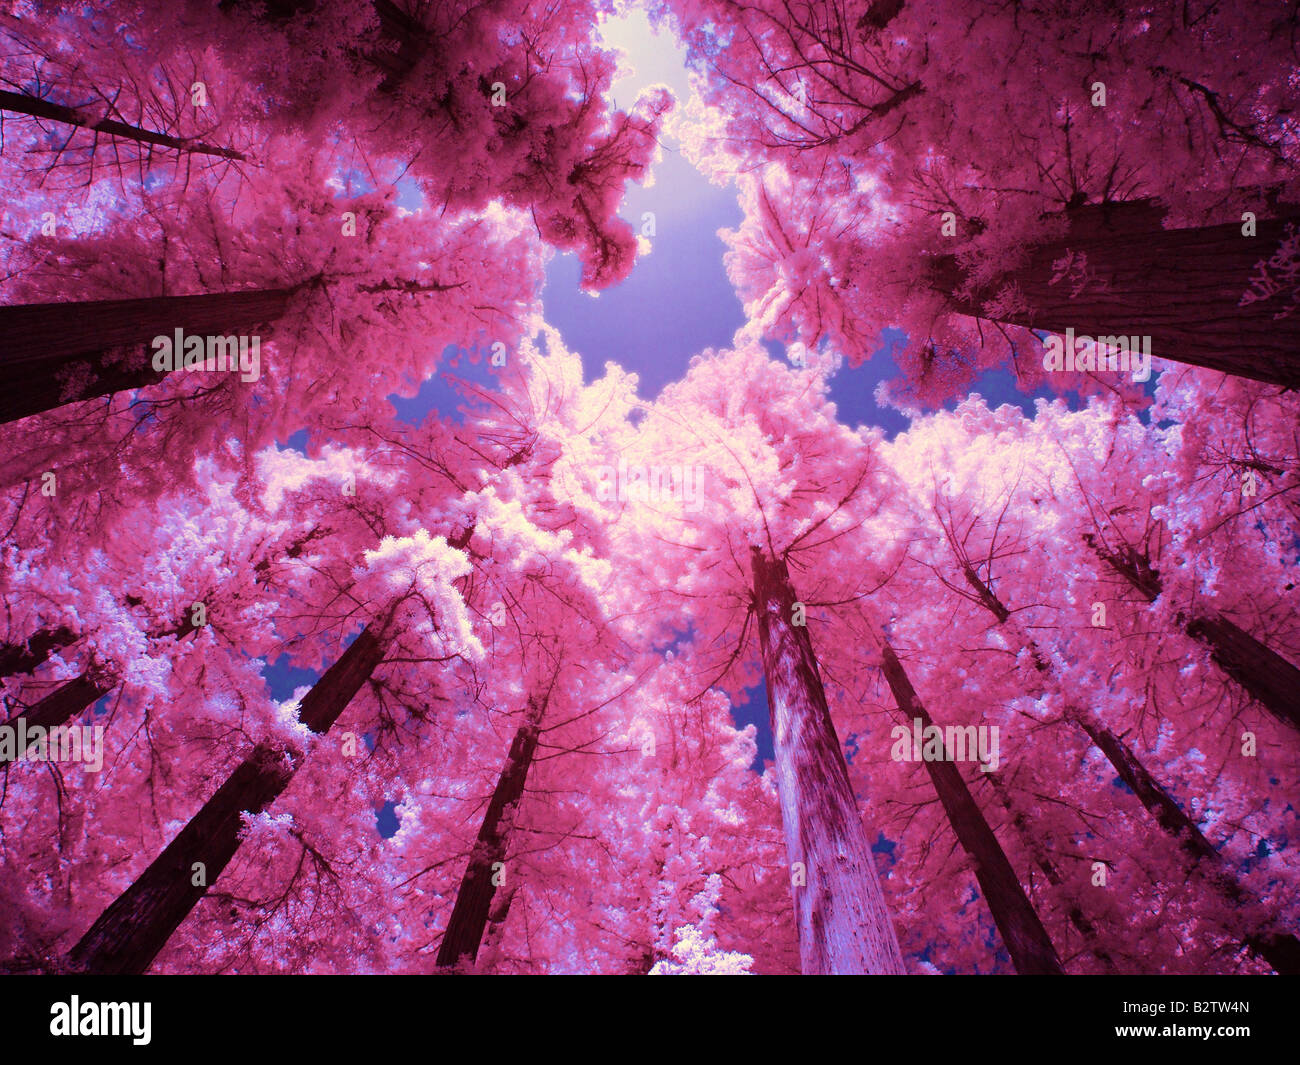 A due colori infrarosso digitale foto di tree tops Foto Stock